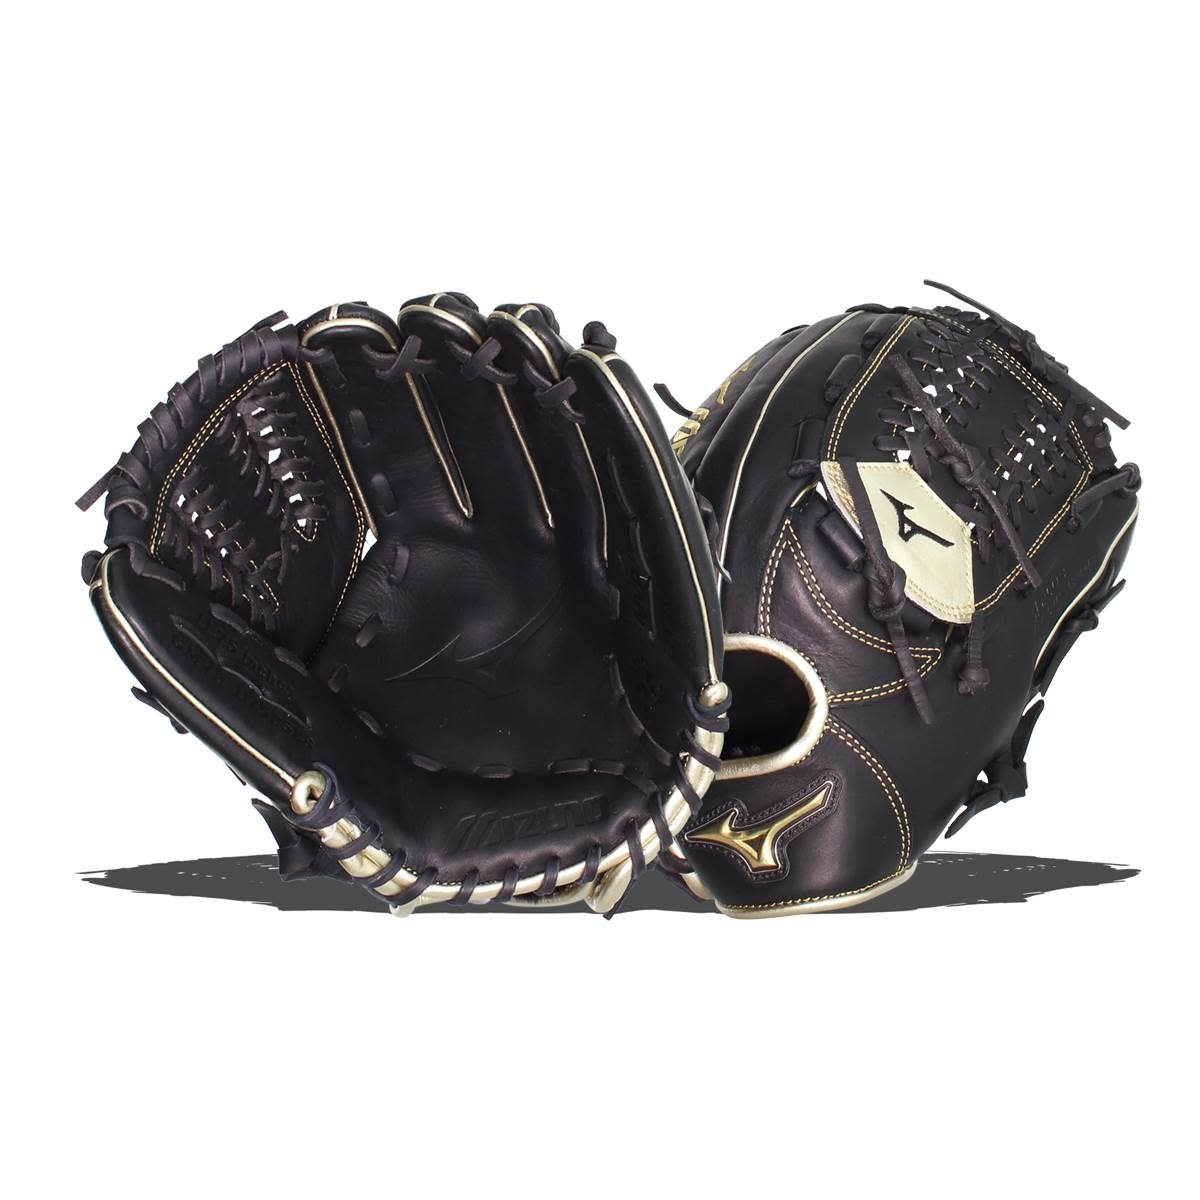 Mizuno GMVP1175PSE8 11.75 inch glove RHT Black/gold